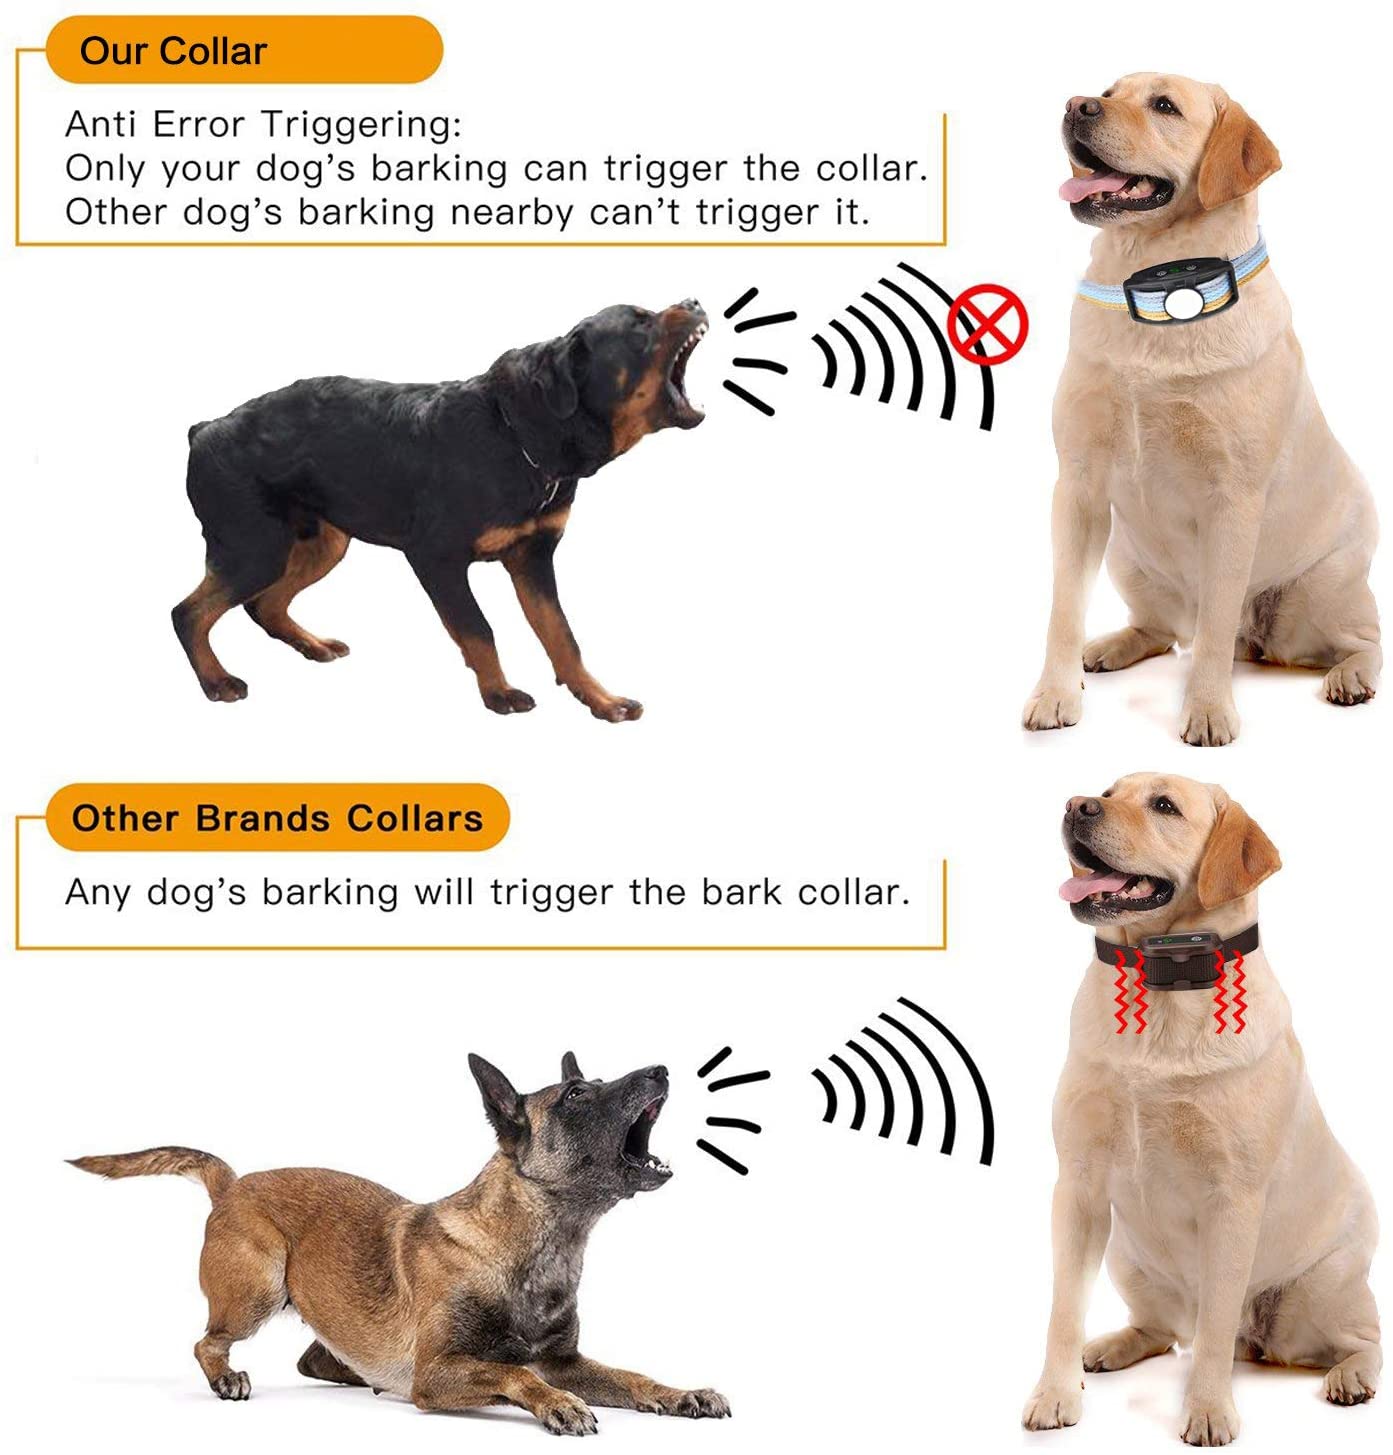  Collar Antiladridos para Perros, Automático Collar Adiestramiento con Ajustable Vibración sin Descarga Eléctrica, 5 Niveles de Sensibilidad, Impermeable y Recargable, para perros de diferentes tamaños 